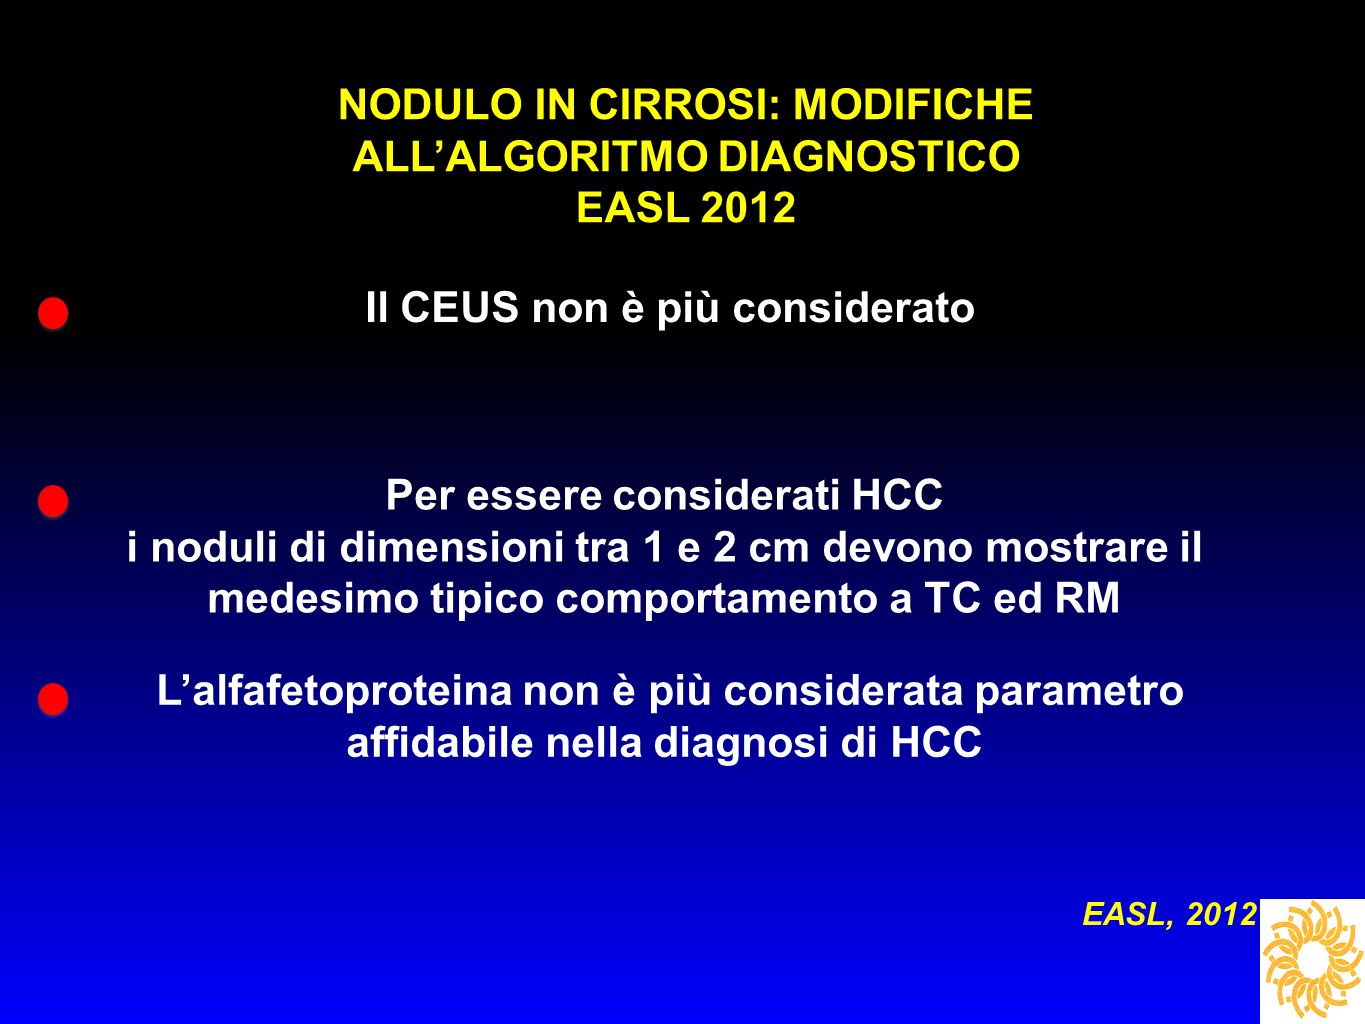 NODULO IN CIRROSI: MODIFICHE ALL’ALGORITMO DIAGNOSTICO EASL 2012